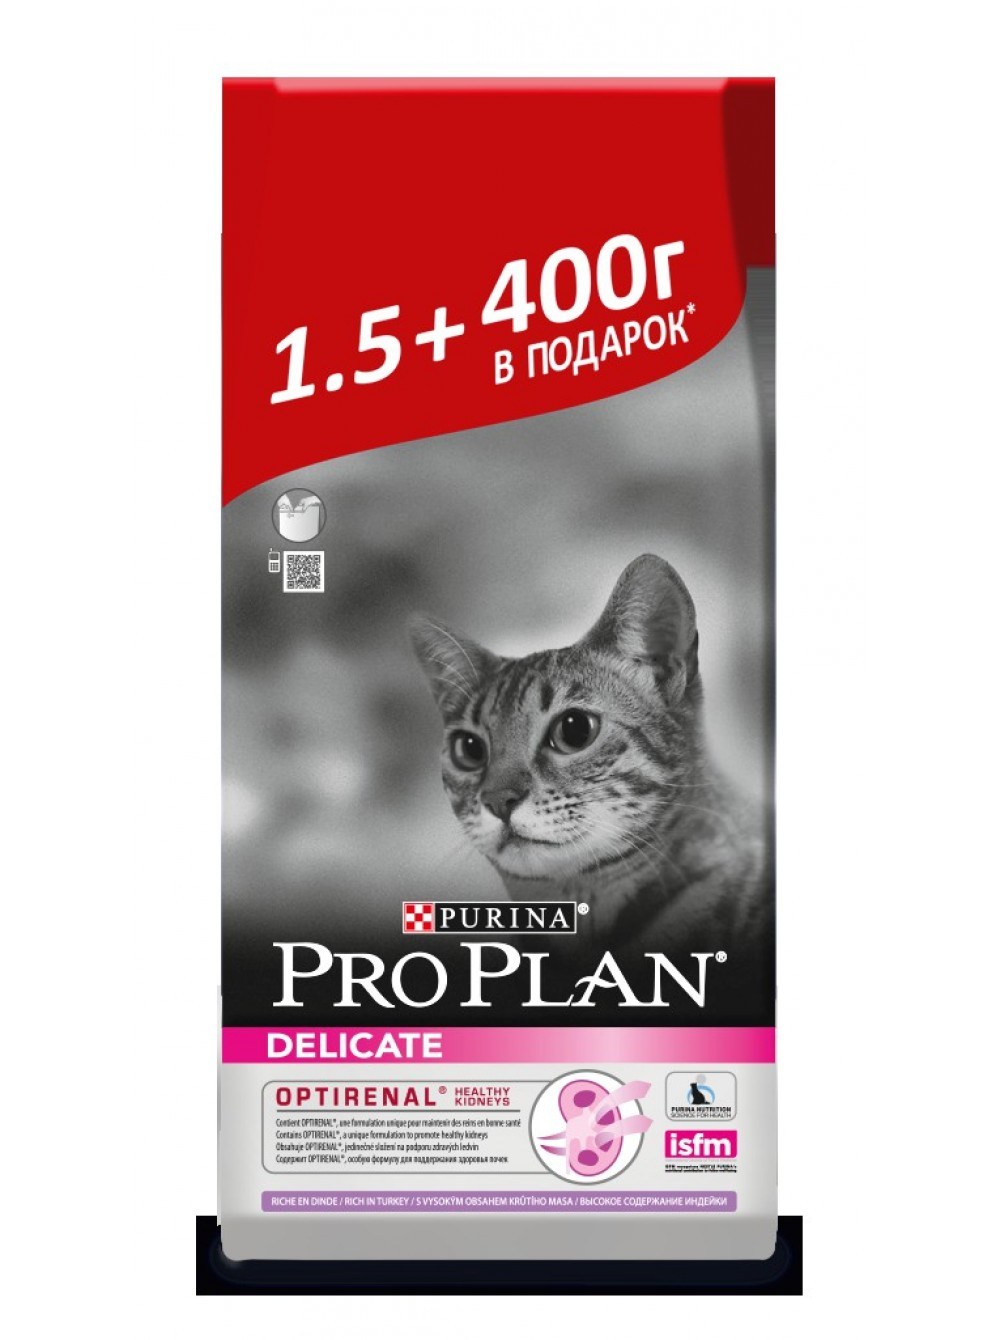 Pro plan для кошек 1.5 кг. Корм Пурина Проплан для котят. Проплан Оптиренал для кошек. Проплан для кошек сухой 1.5 кг. Пурина про план корм для кошек.